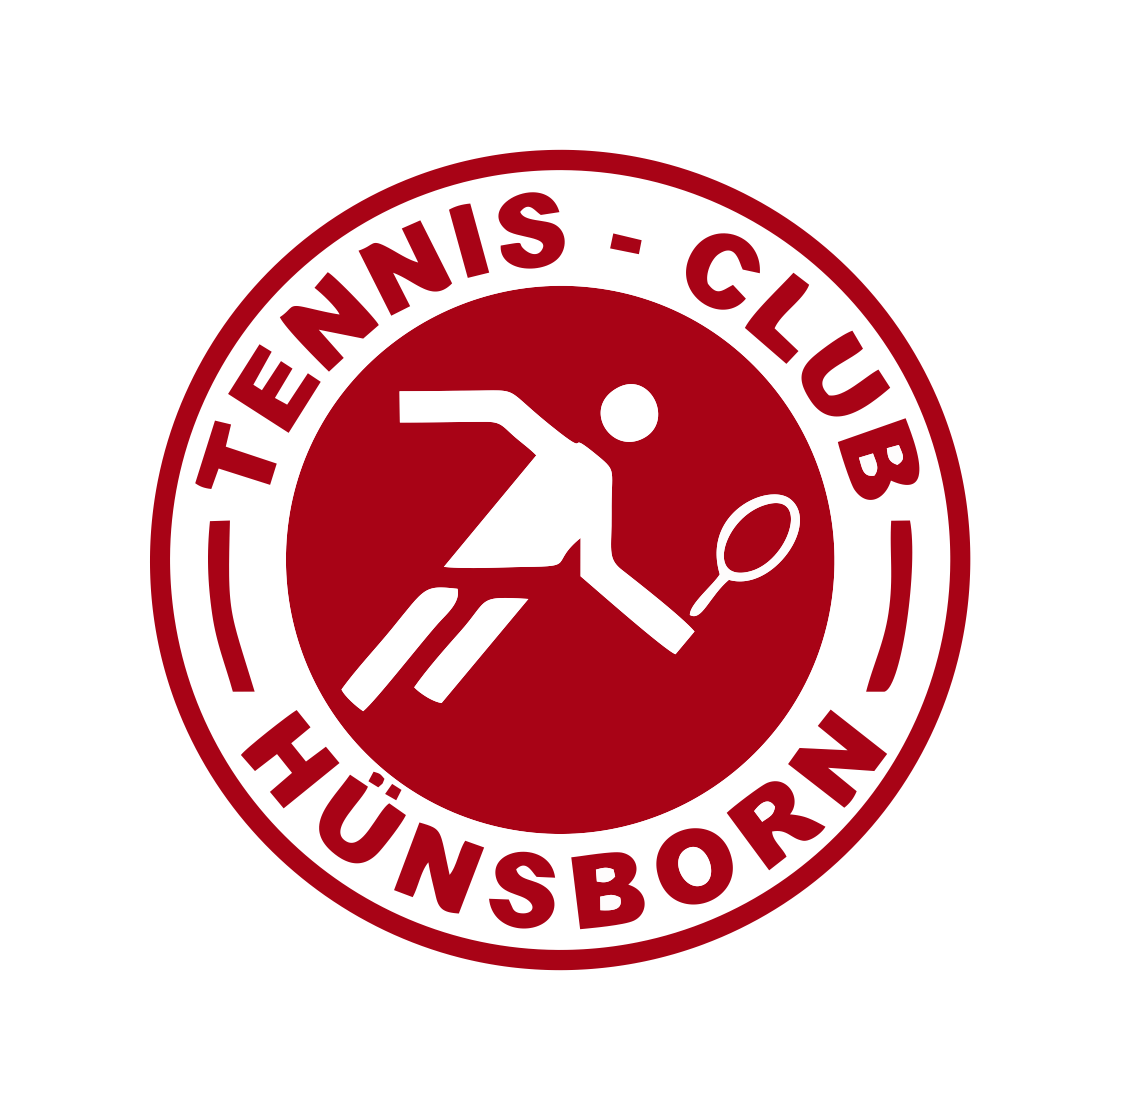 Tennis - Club Hünsborn